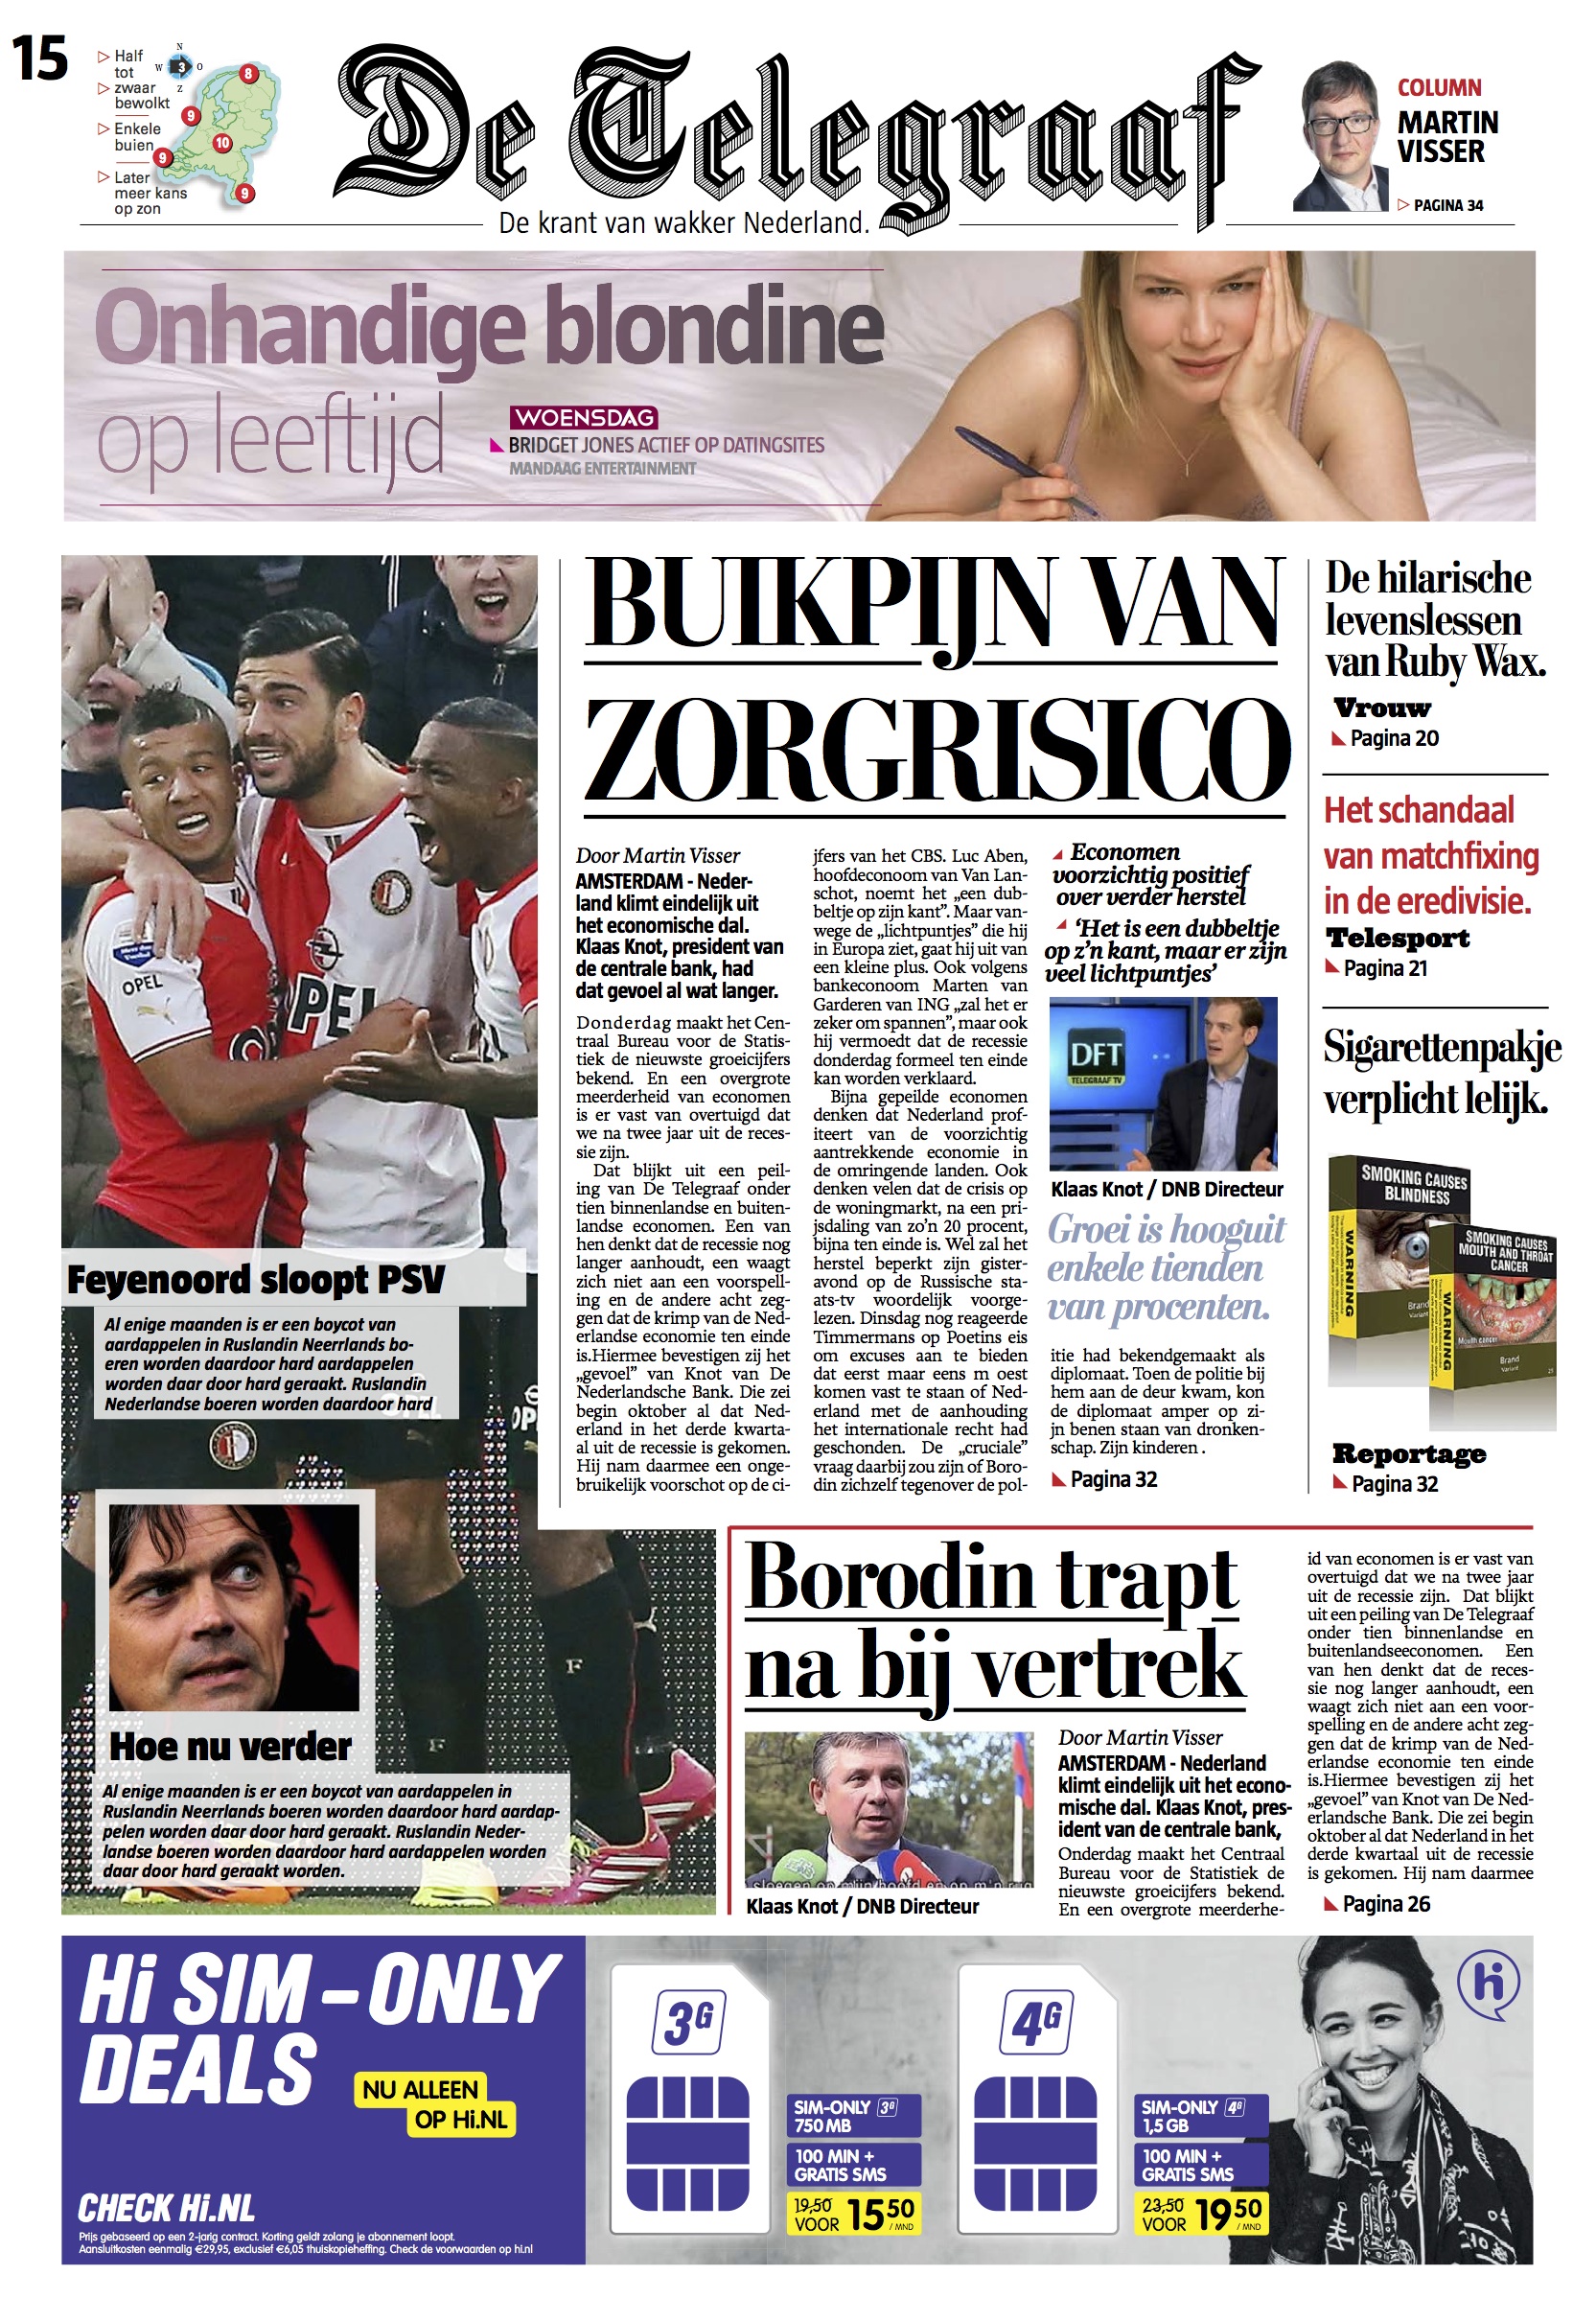 De Telegraaf: it's a new tabloid look where legacy meets the future | García Media